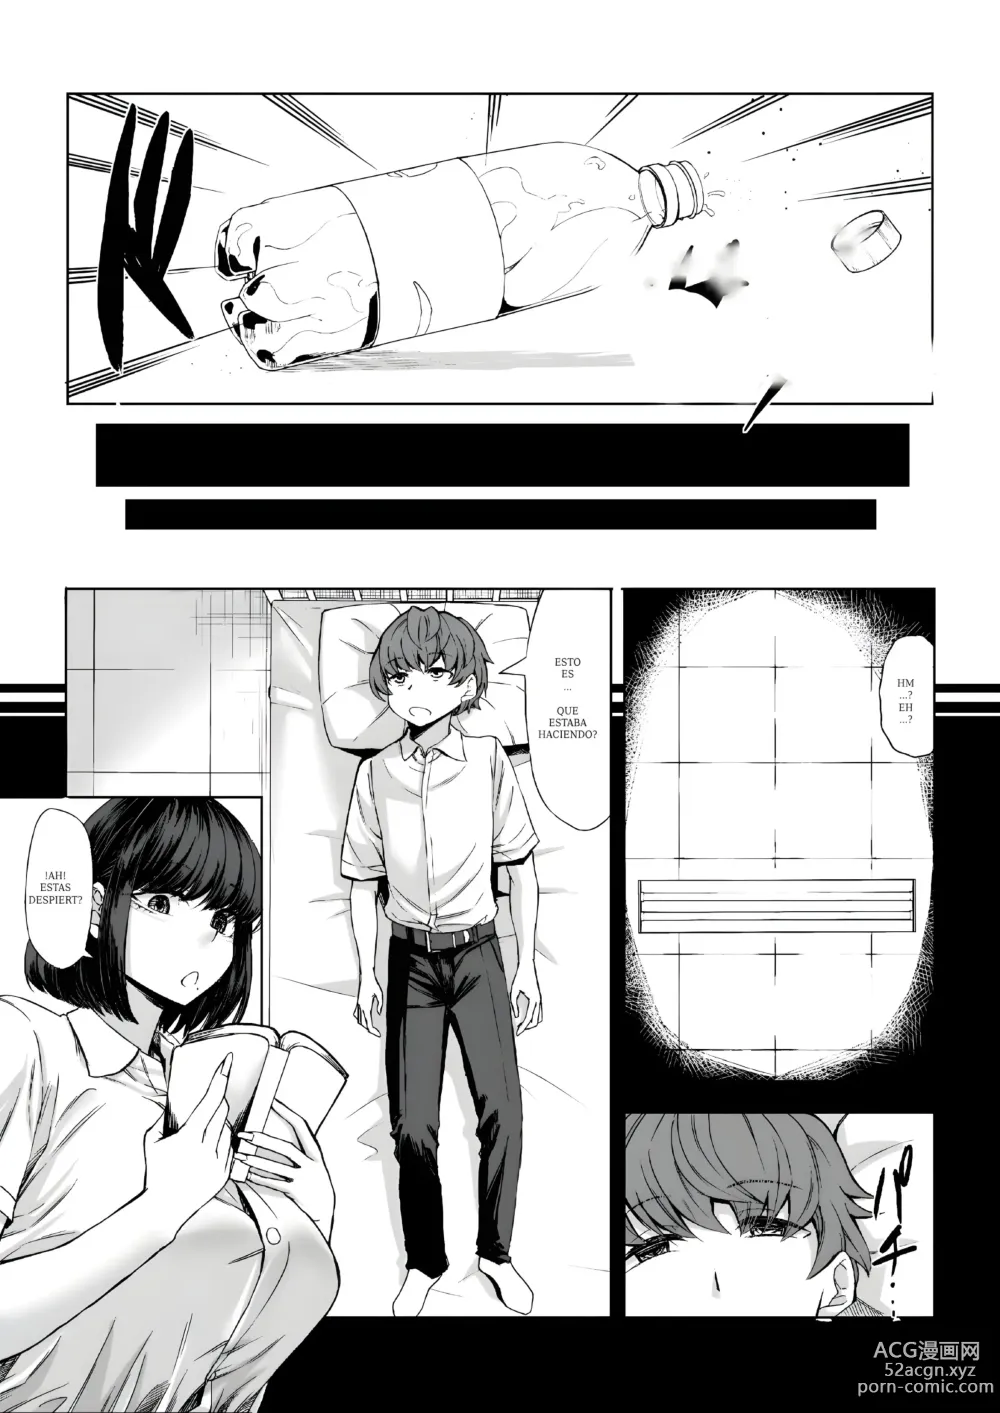 Page 15 of doujinshi Mi virginidad fue robada mientras dormia